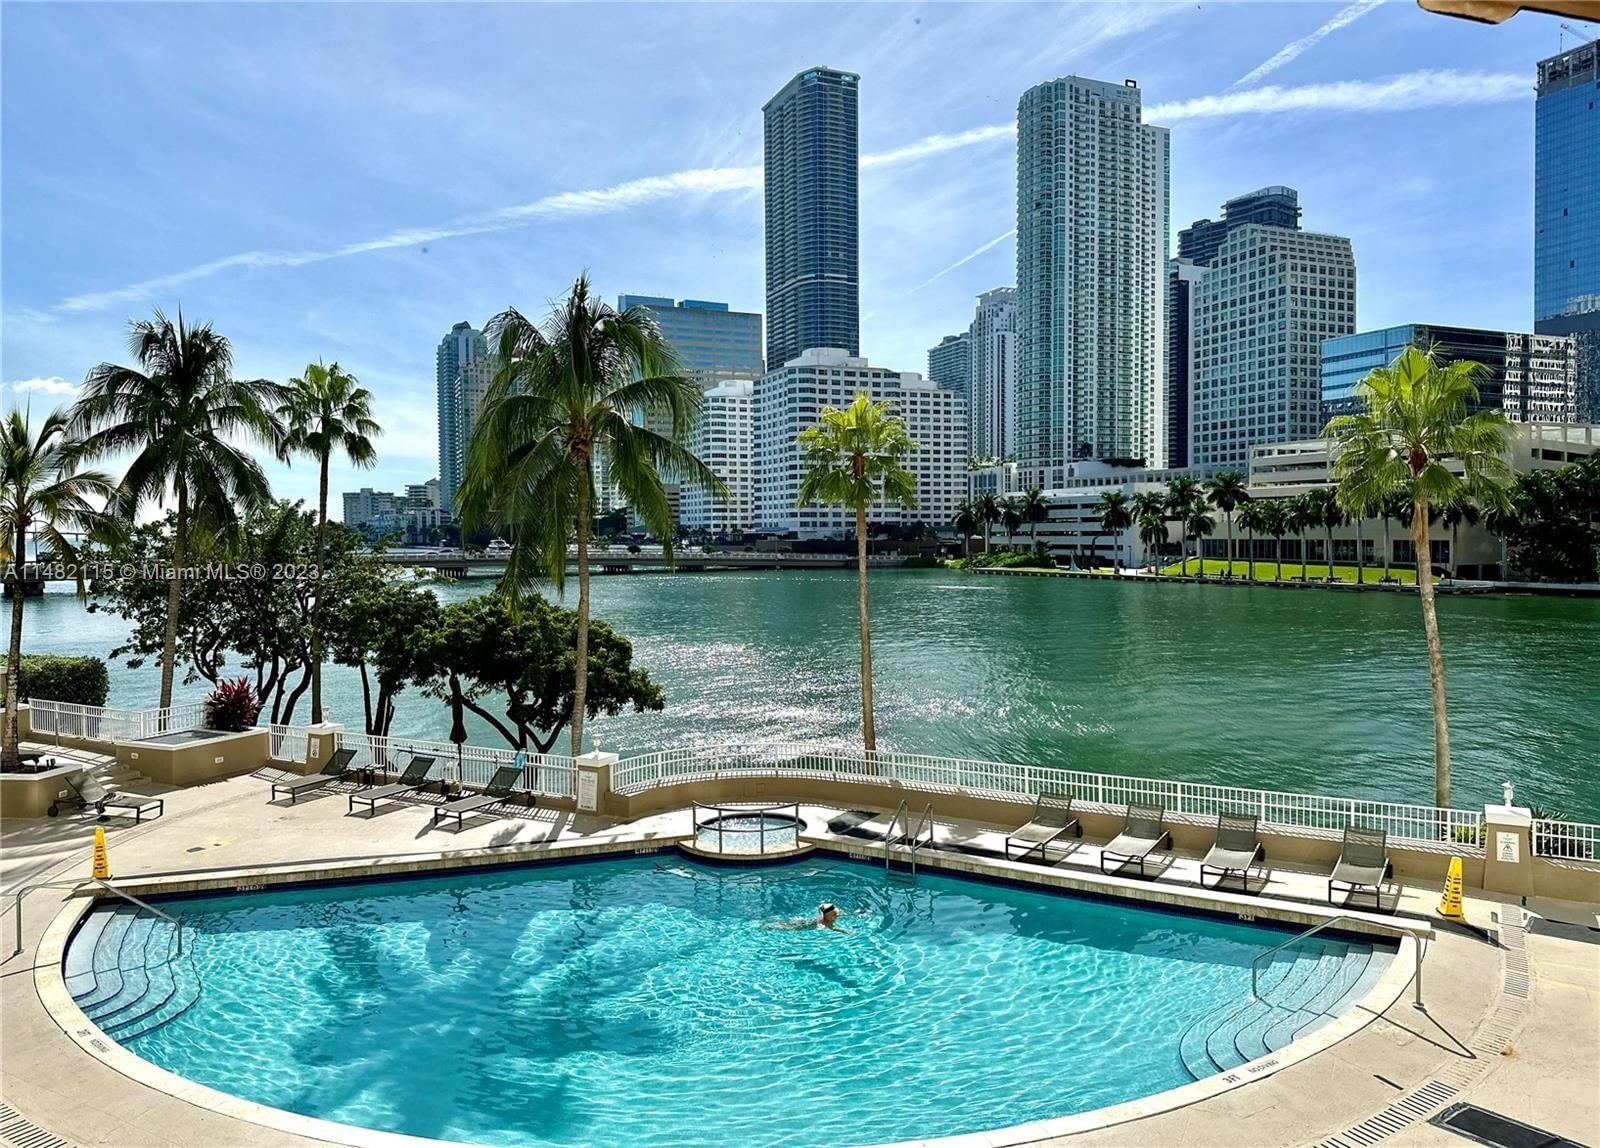 Real estate property located at 701 Brickell Key Blvd #2401, Miami-Dade County, COURVOISIER COURTS CONDO, Miami, FL